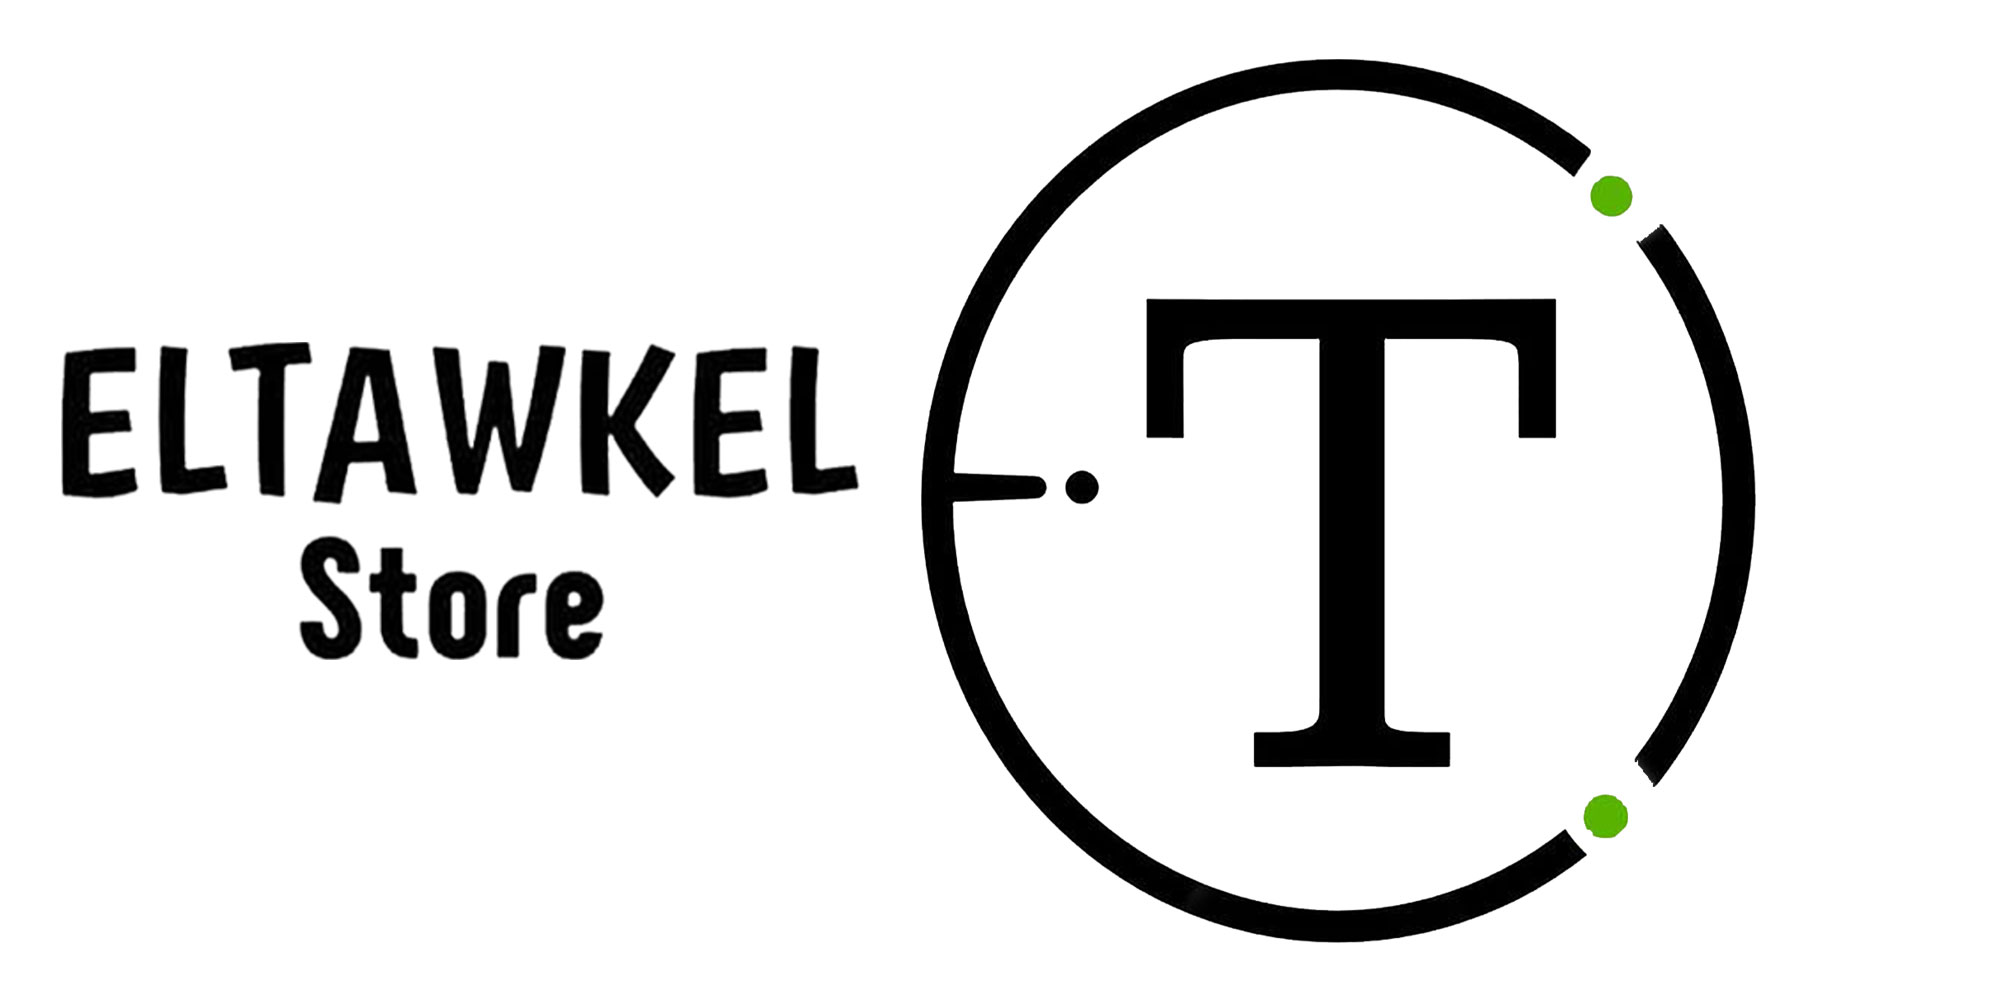 التوكيل ستور – Tawkel Store